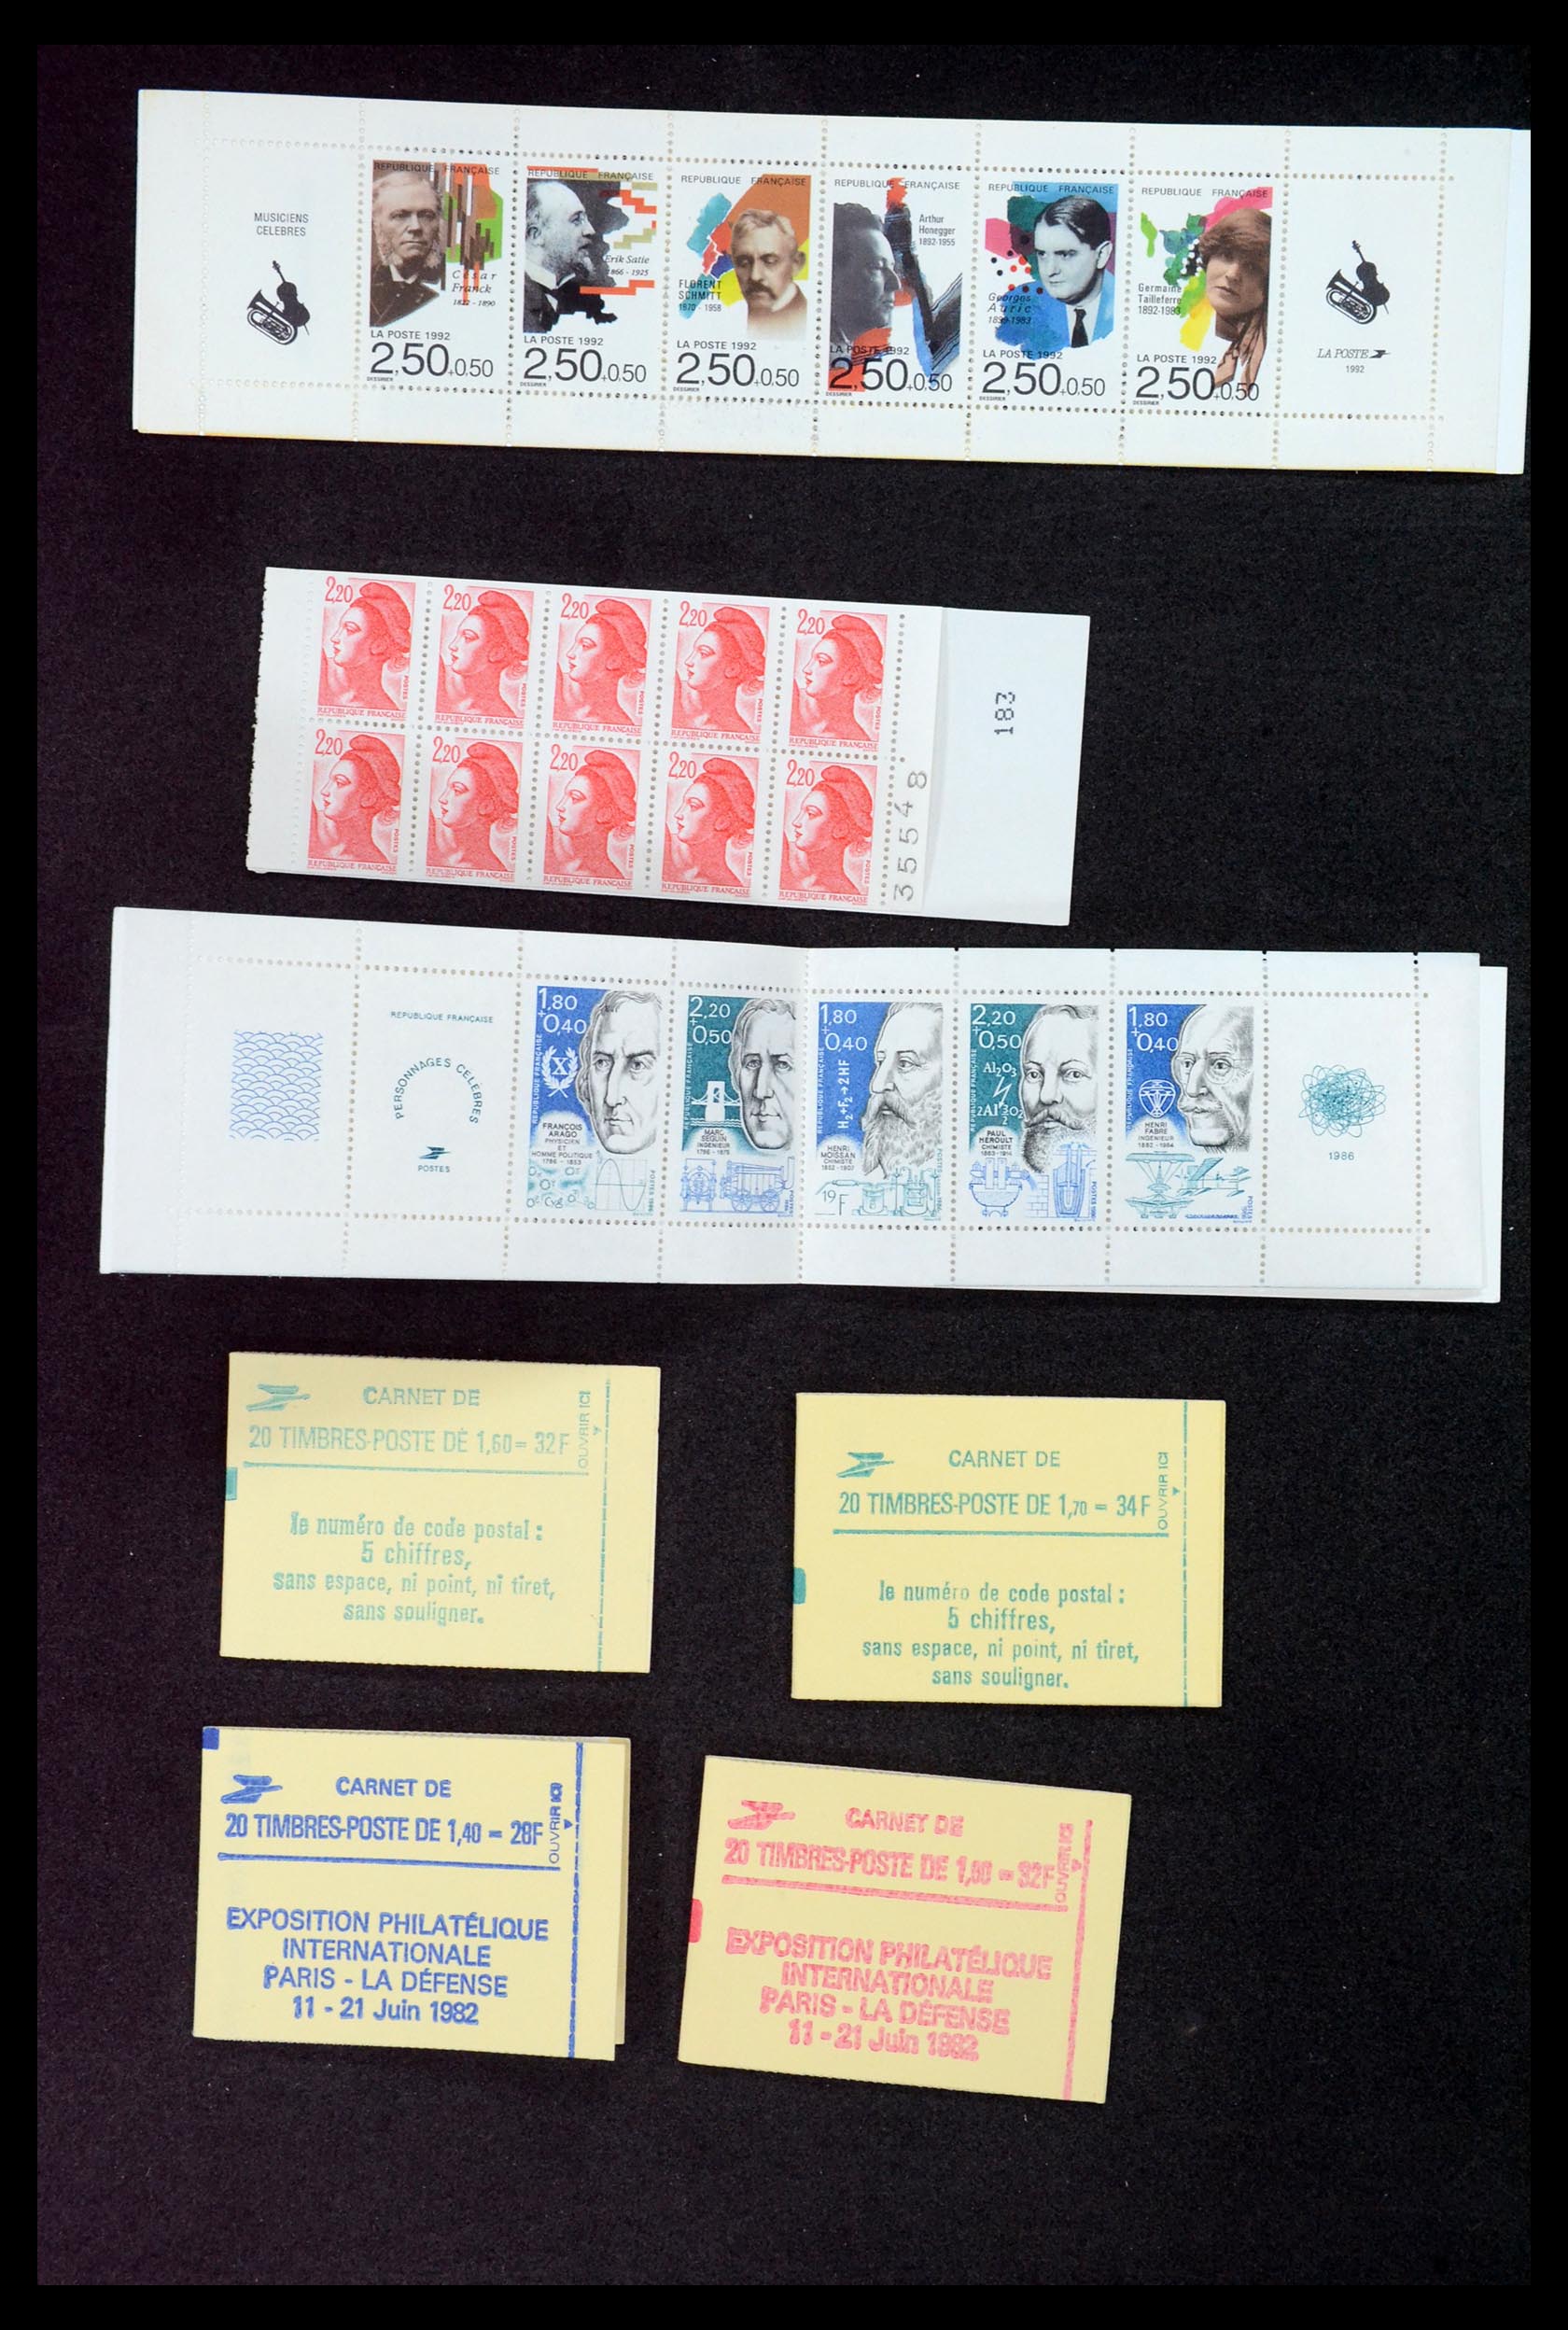 35146 002 - Stamp Collection 35146 France stampbooklets.